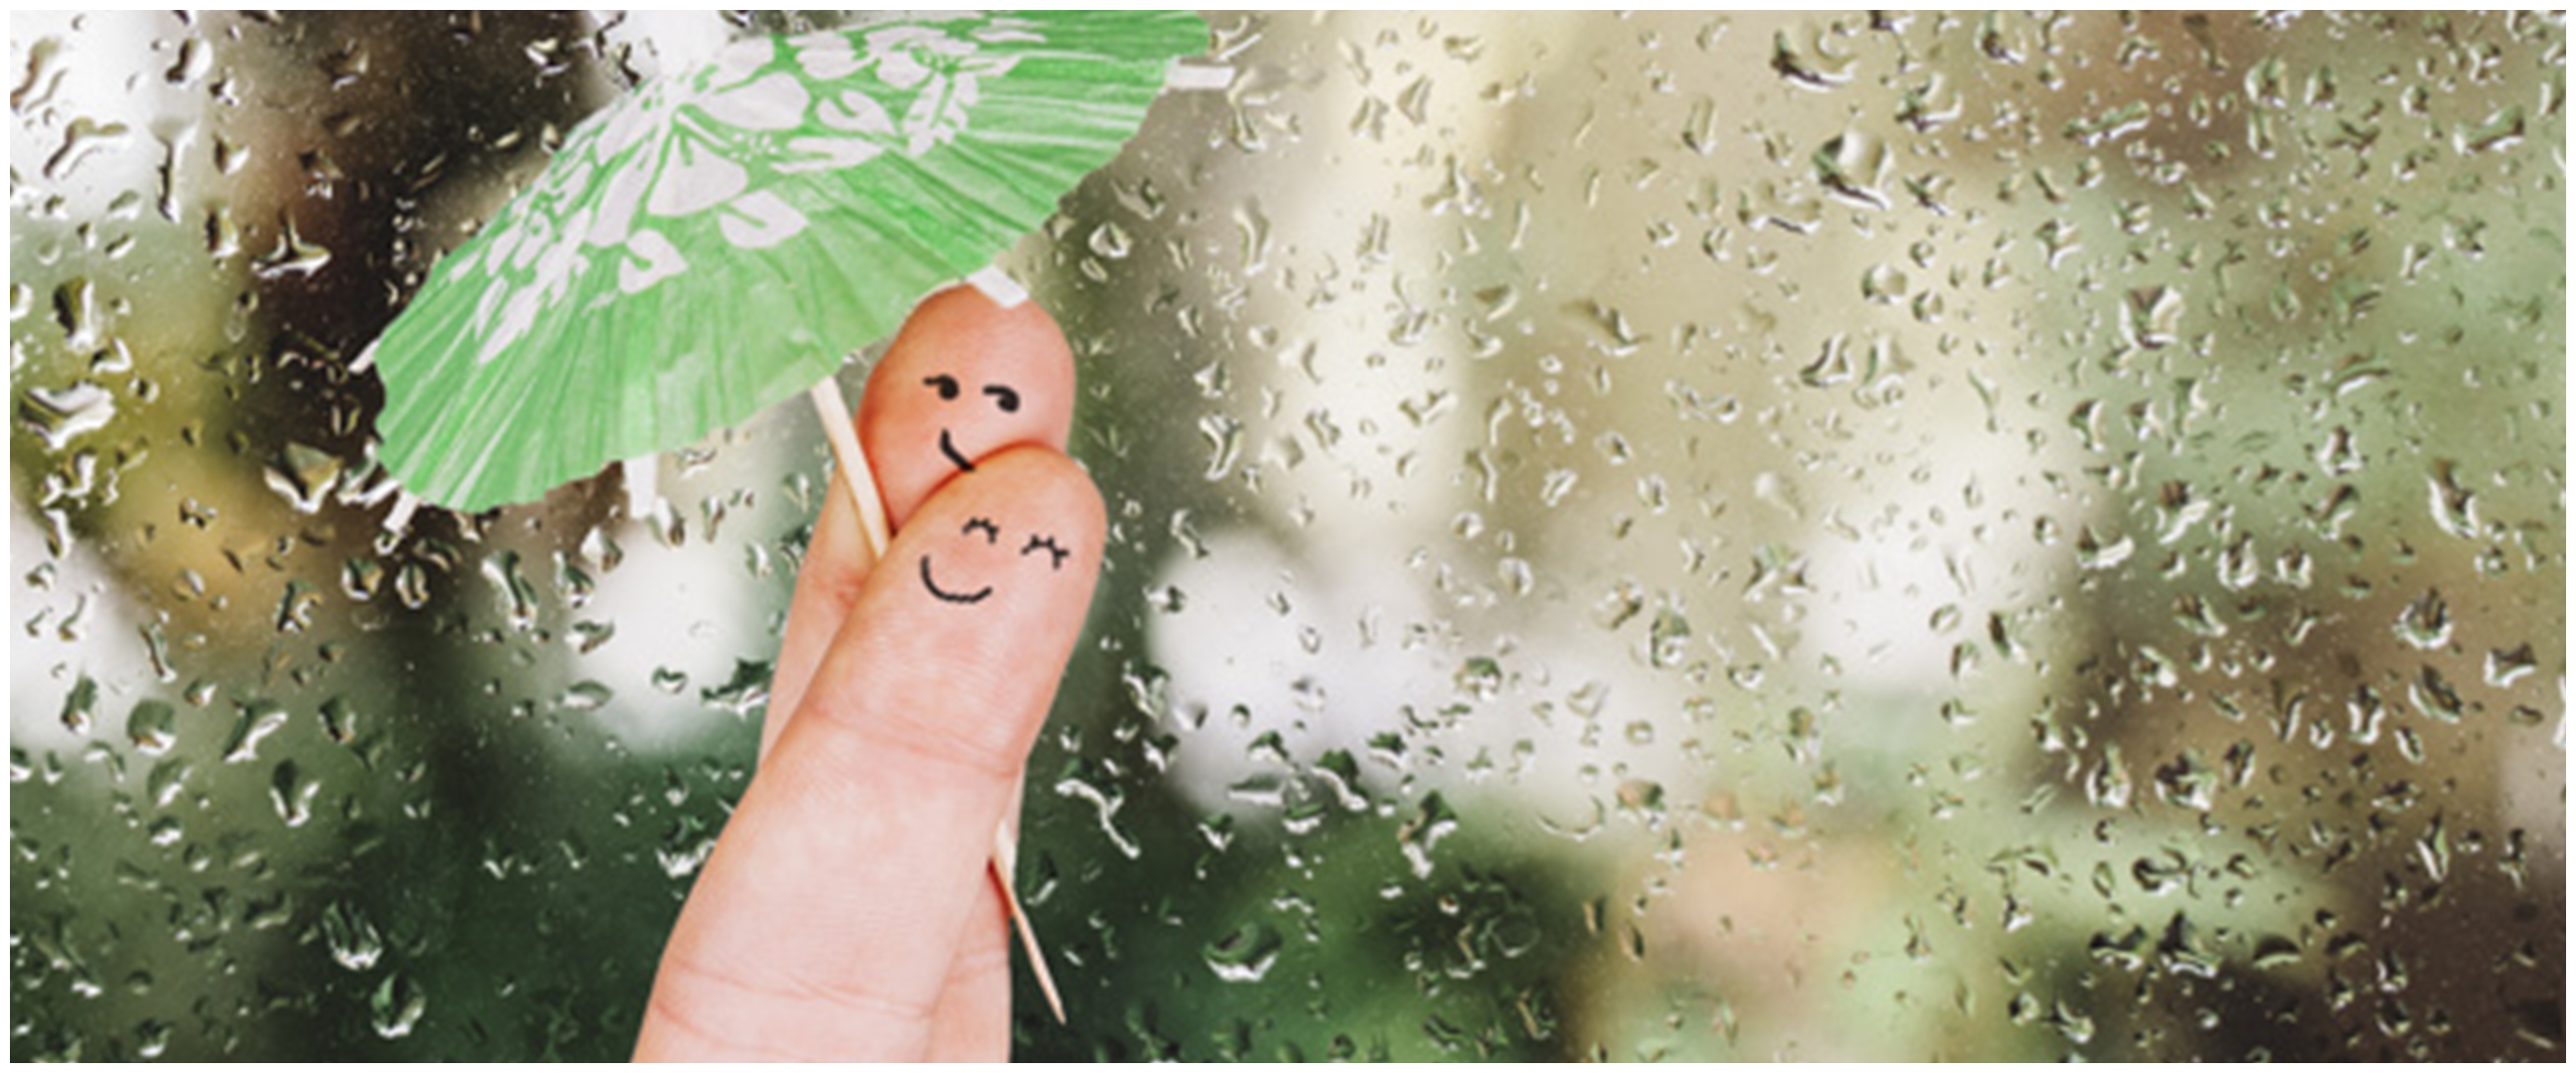 50 Kata-kata romantis tentang hujan, bikin hati jadi adem